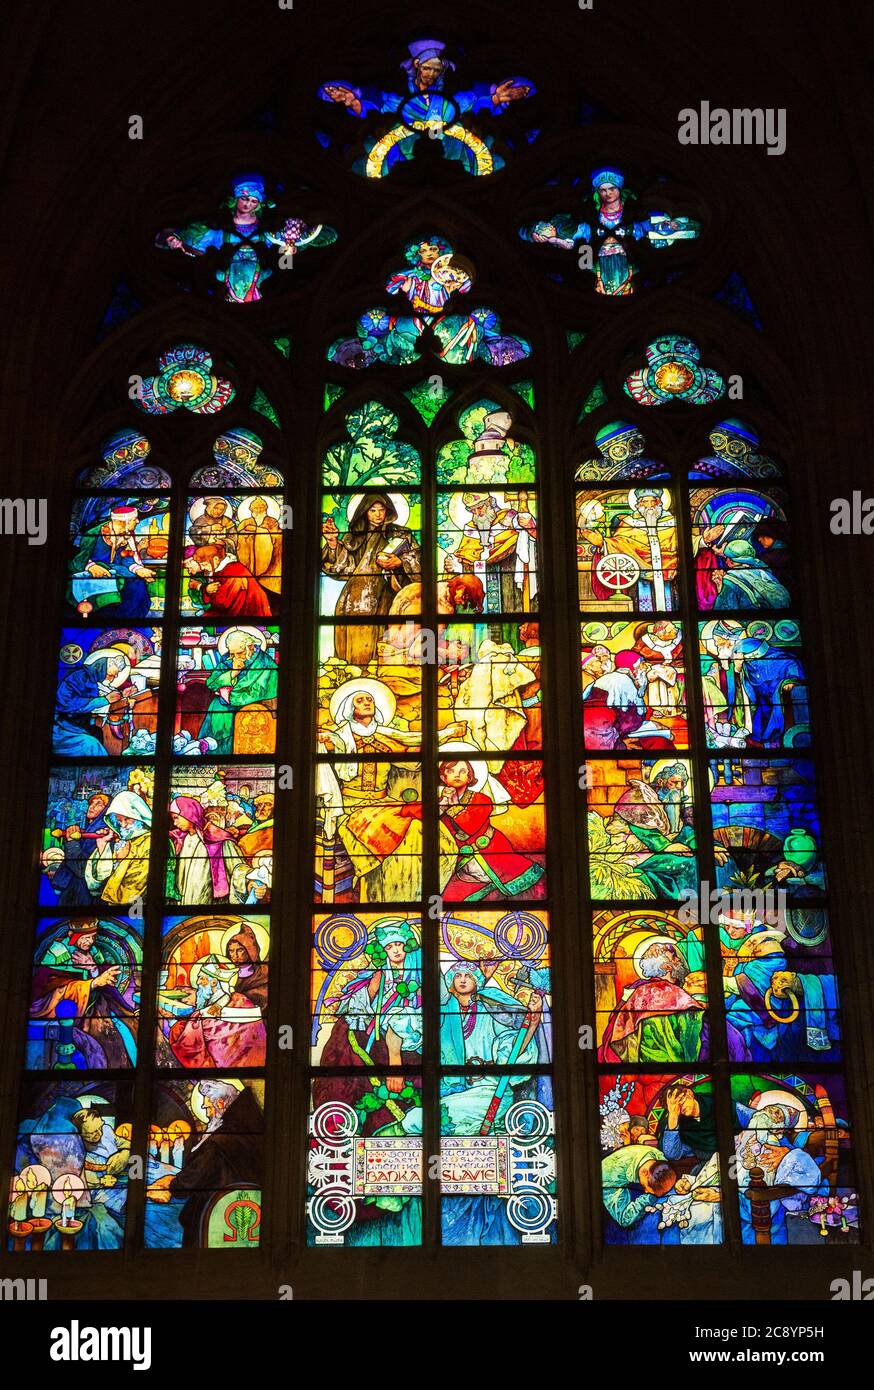 PRAGUE - 10 MARS 2020 : vitrail conçu par le peintre Art nouveau Alfons Mucha dans la cathédrale Saint-Vitus, Prague, République tchèque Banque D'Images